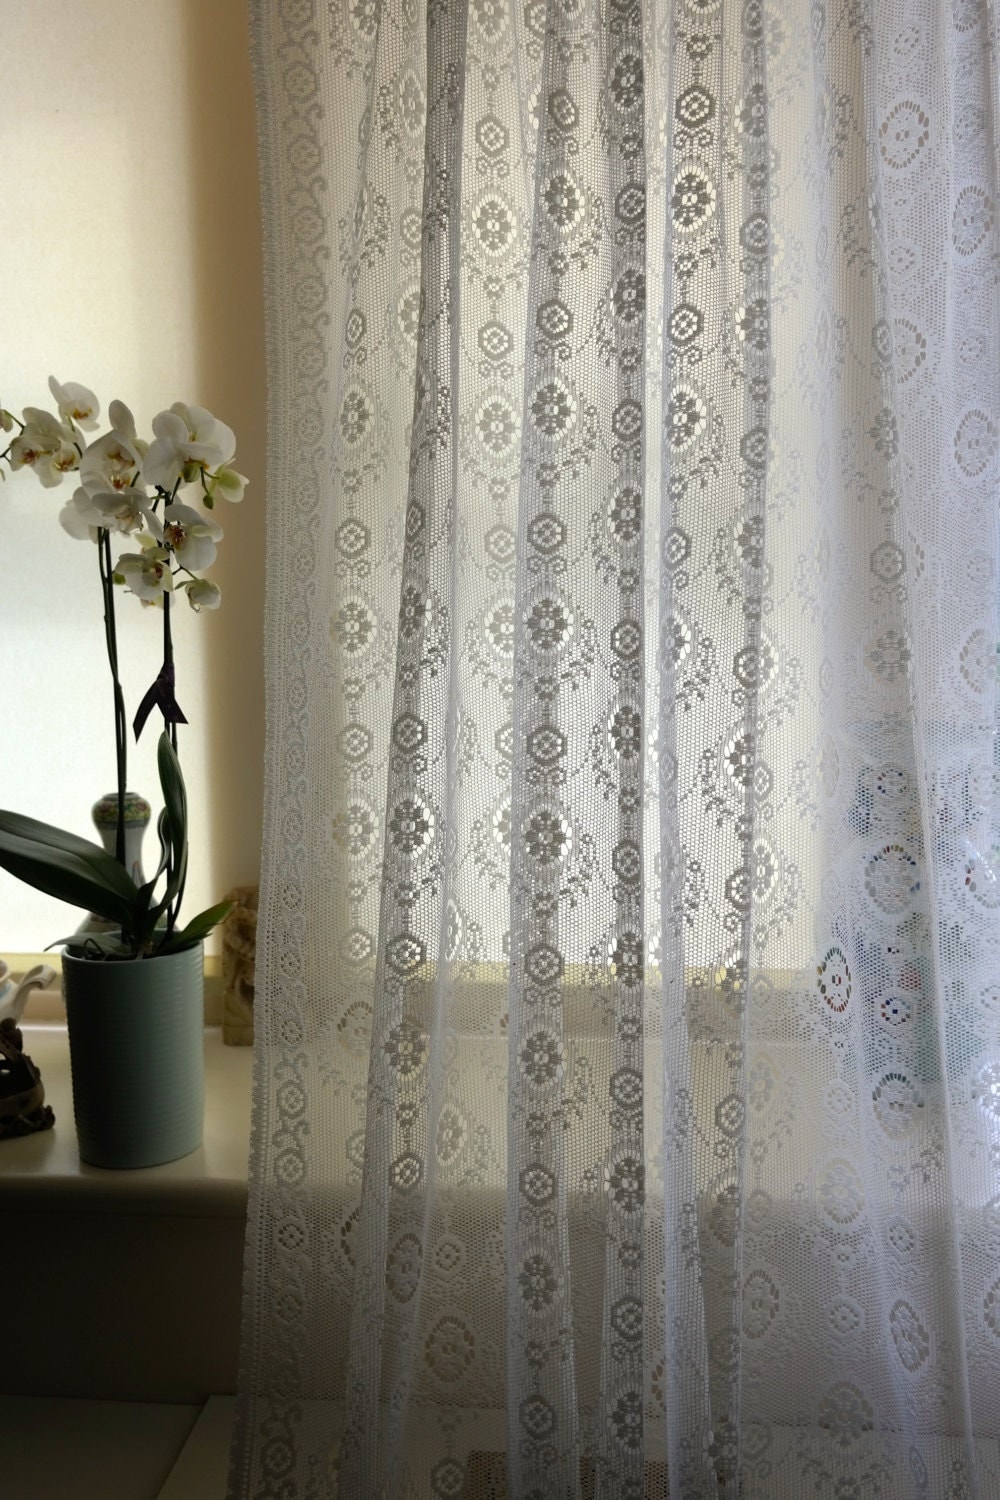 Scottish Lace Curtain Panel Edwina period Design Cream cotton